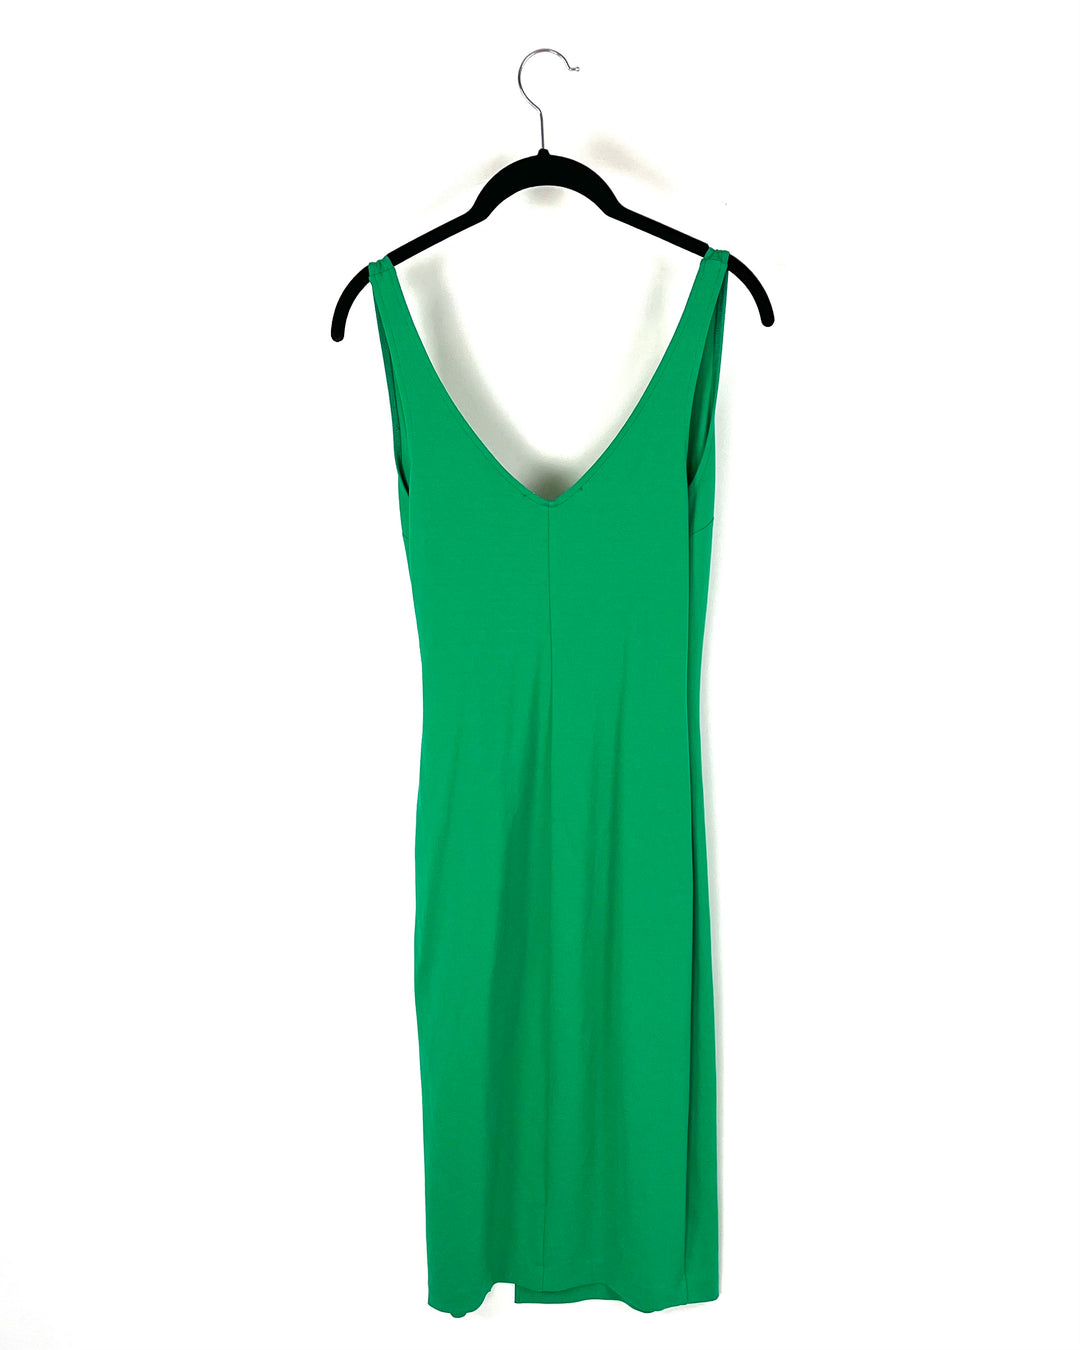 Midi Green Tank Top Dress - Size 4/6